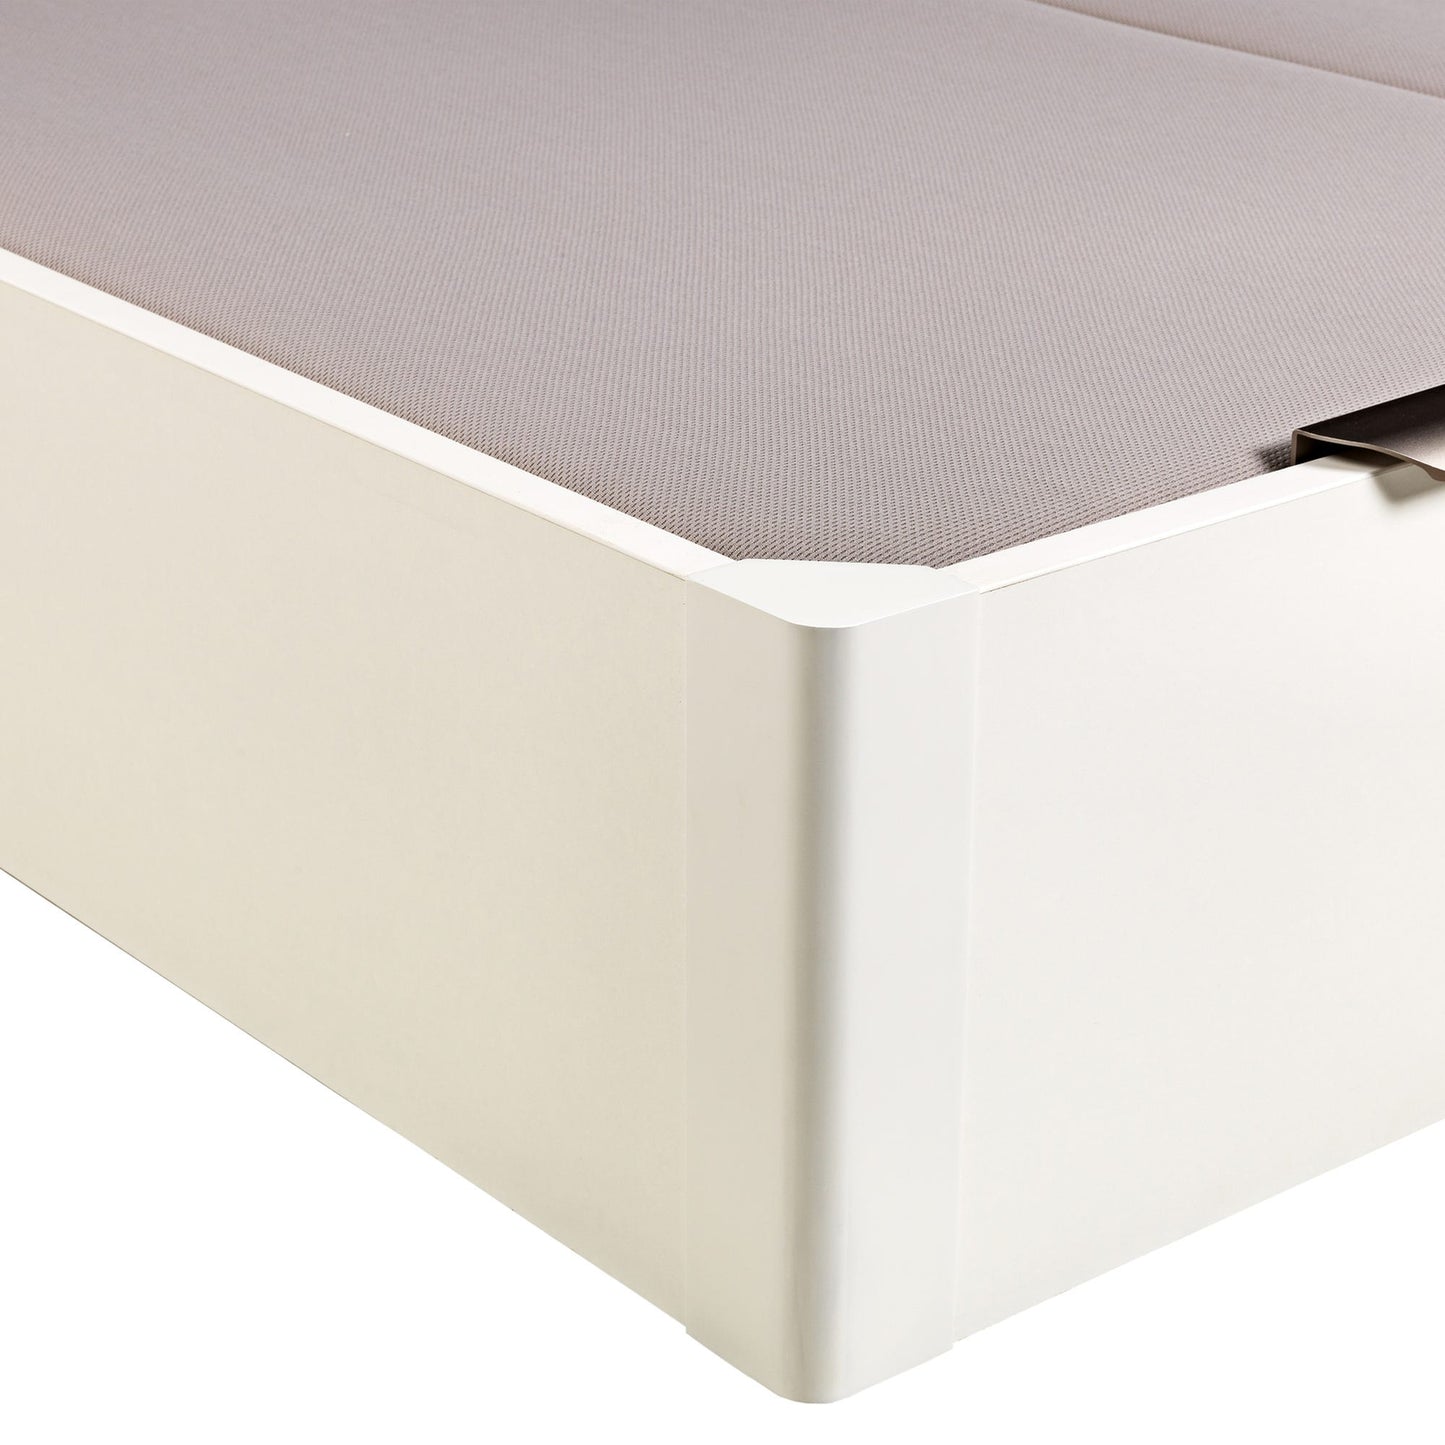 Canapé abatible de madera de tapa doble de color blanco - DESIGN - 160x210